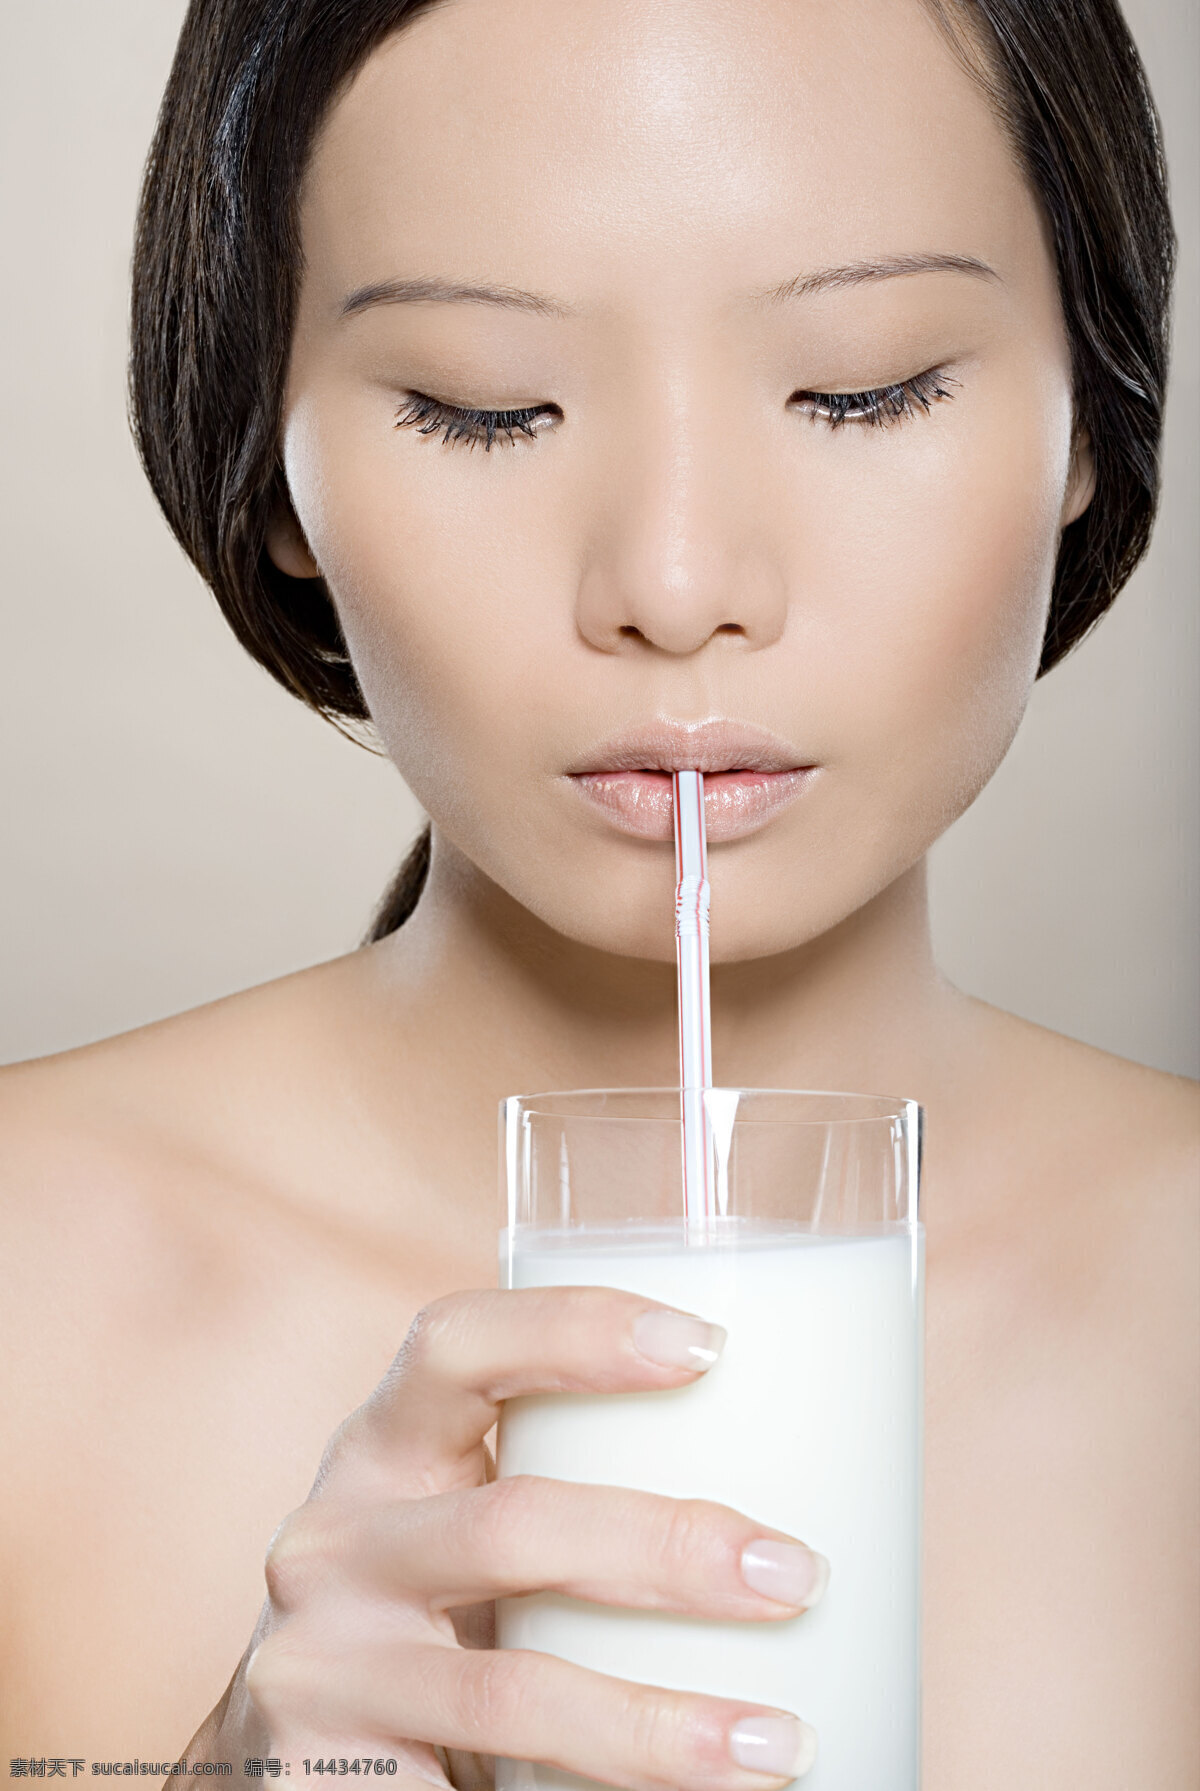 性感美女 喝 牛奶 美女 女人 喝牛奶 白色 乳白 一杯牛奶 吸管 表情 白皙 皮肤 化妆 白嫩 光泽 性感 创意 海报 高清图片 美女图片 人物图片